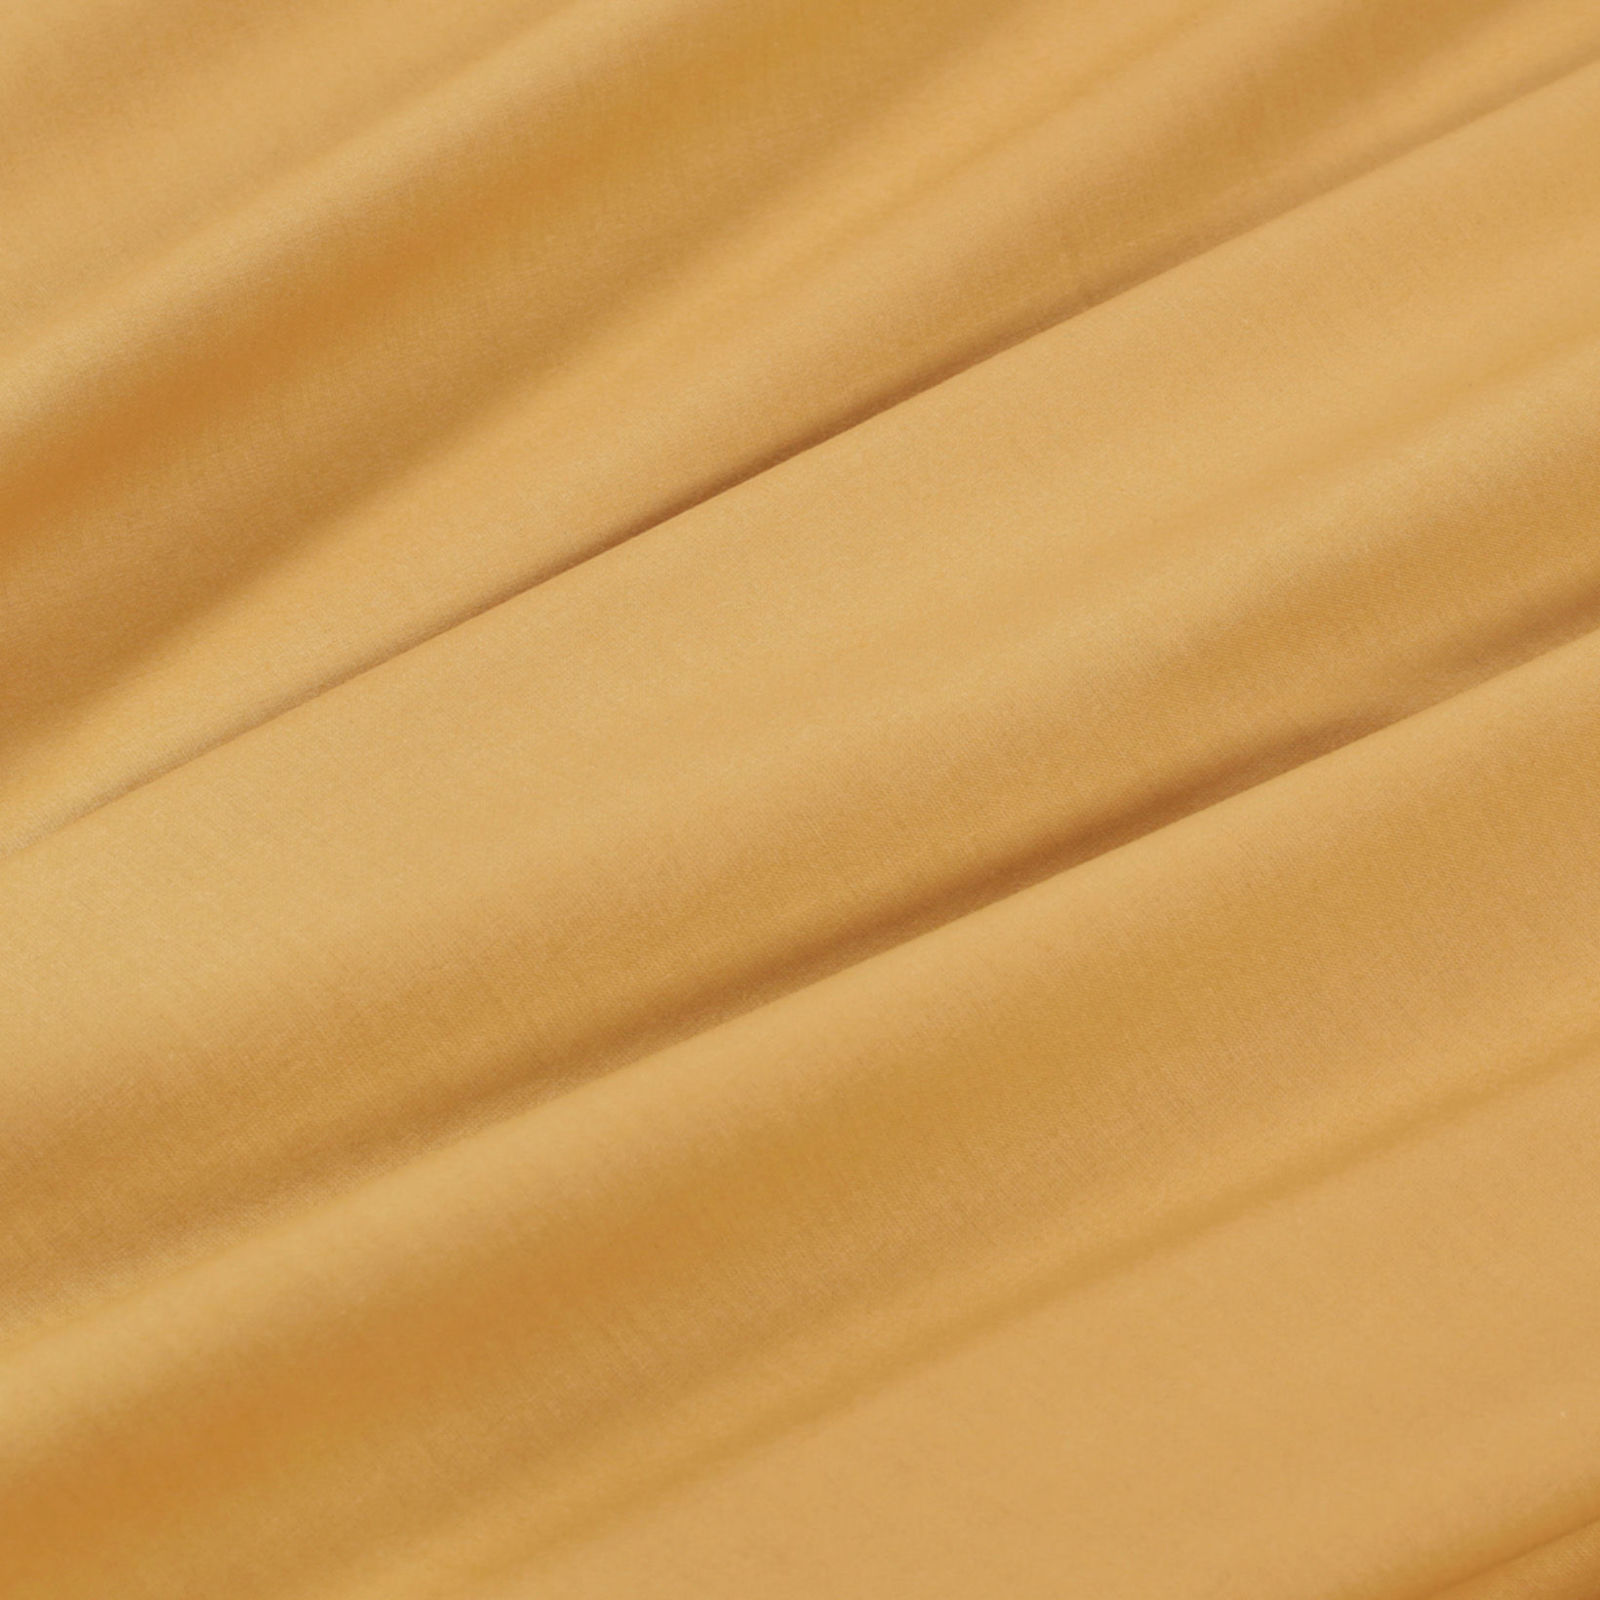 Pamut asztalterítő - mustárszínű - kör alakú